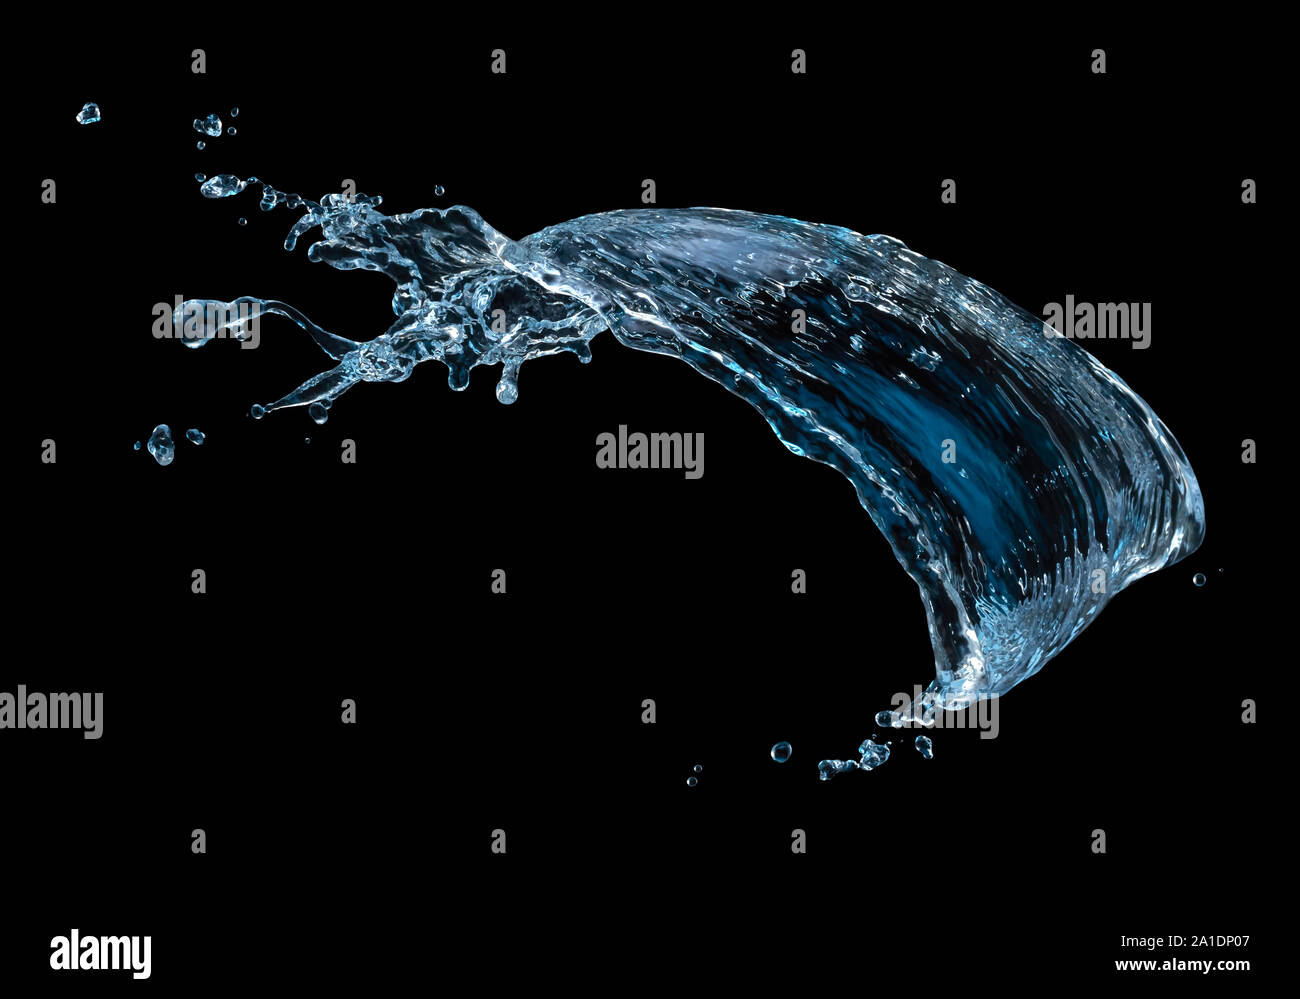 blue water splash isolated on black background Stock Photo